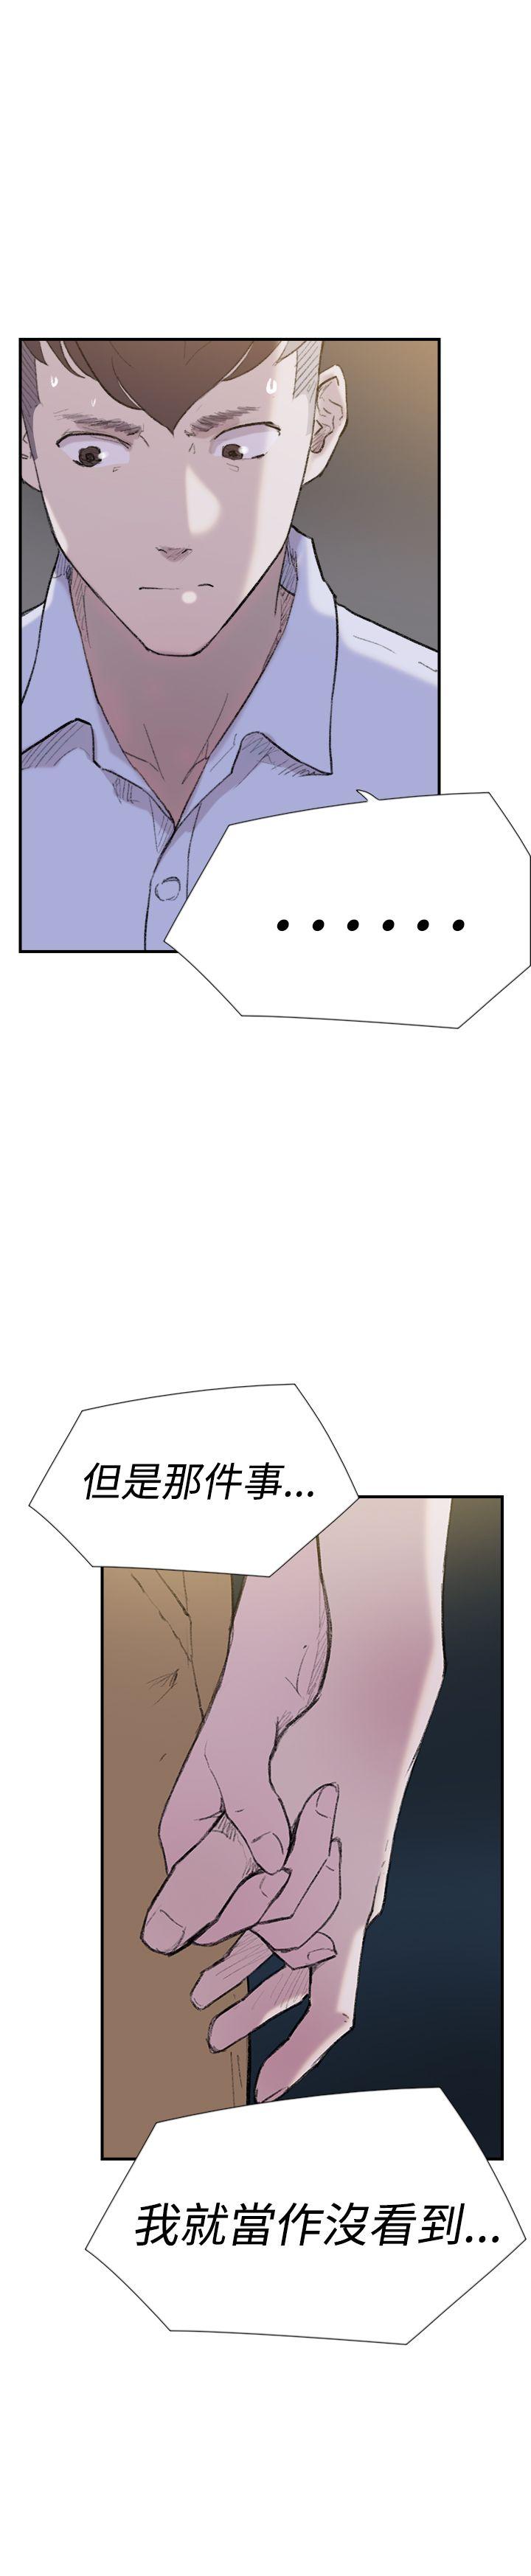 韩国污漫画 雙重戀愛 第29话 26